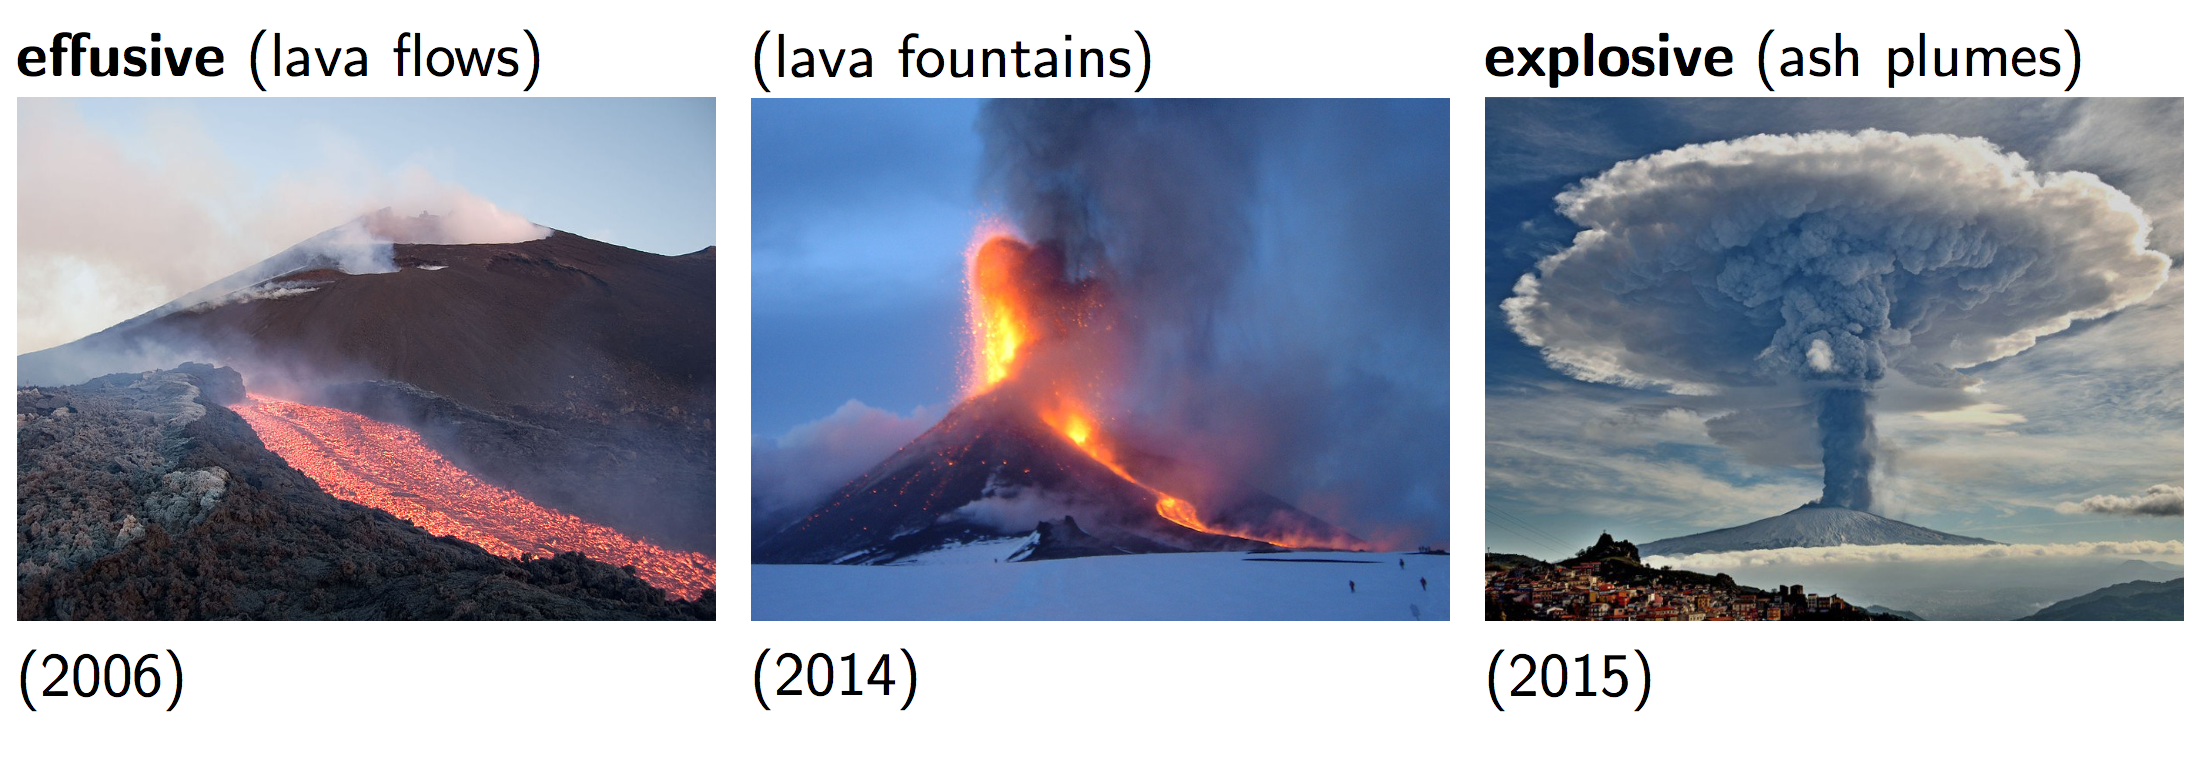 Regimi eruttivi sull'Etna